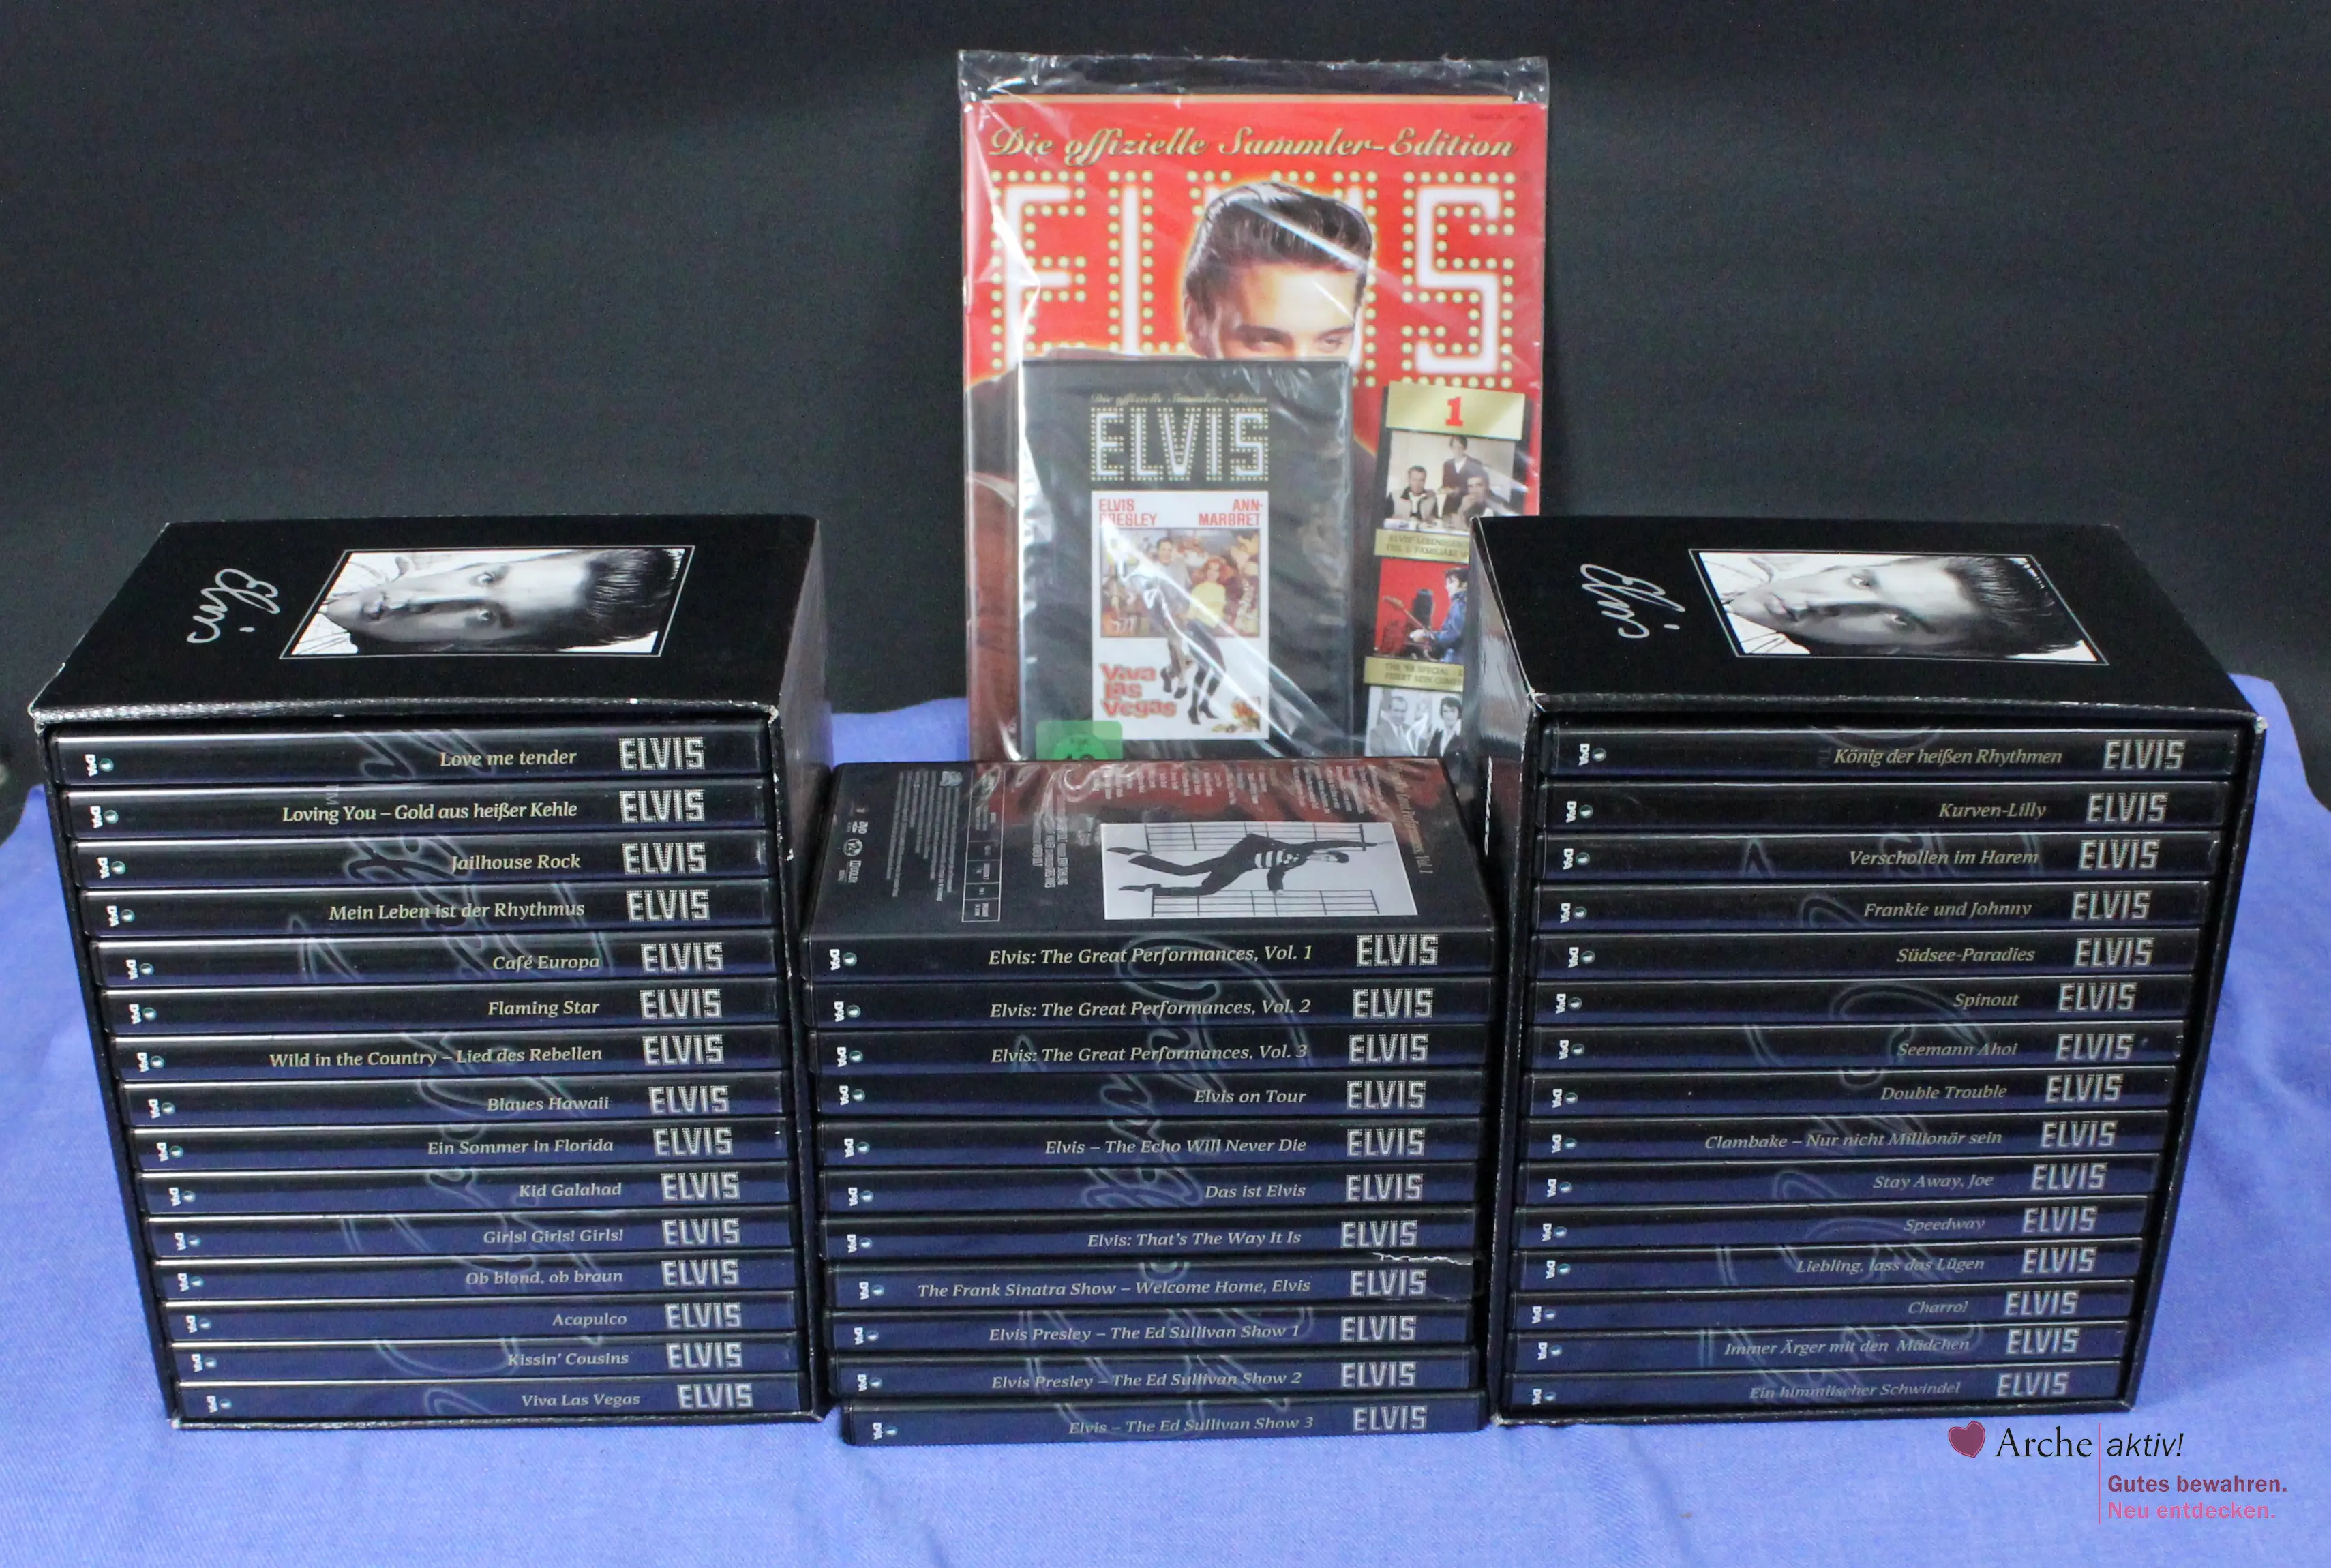 De Agostini Elvis - Die Offizielle Sammler-Edition, 42 DVDs, gebraucht